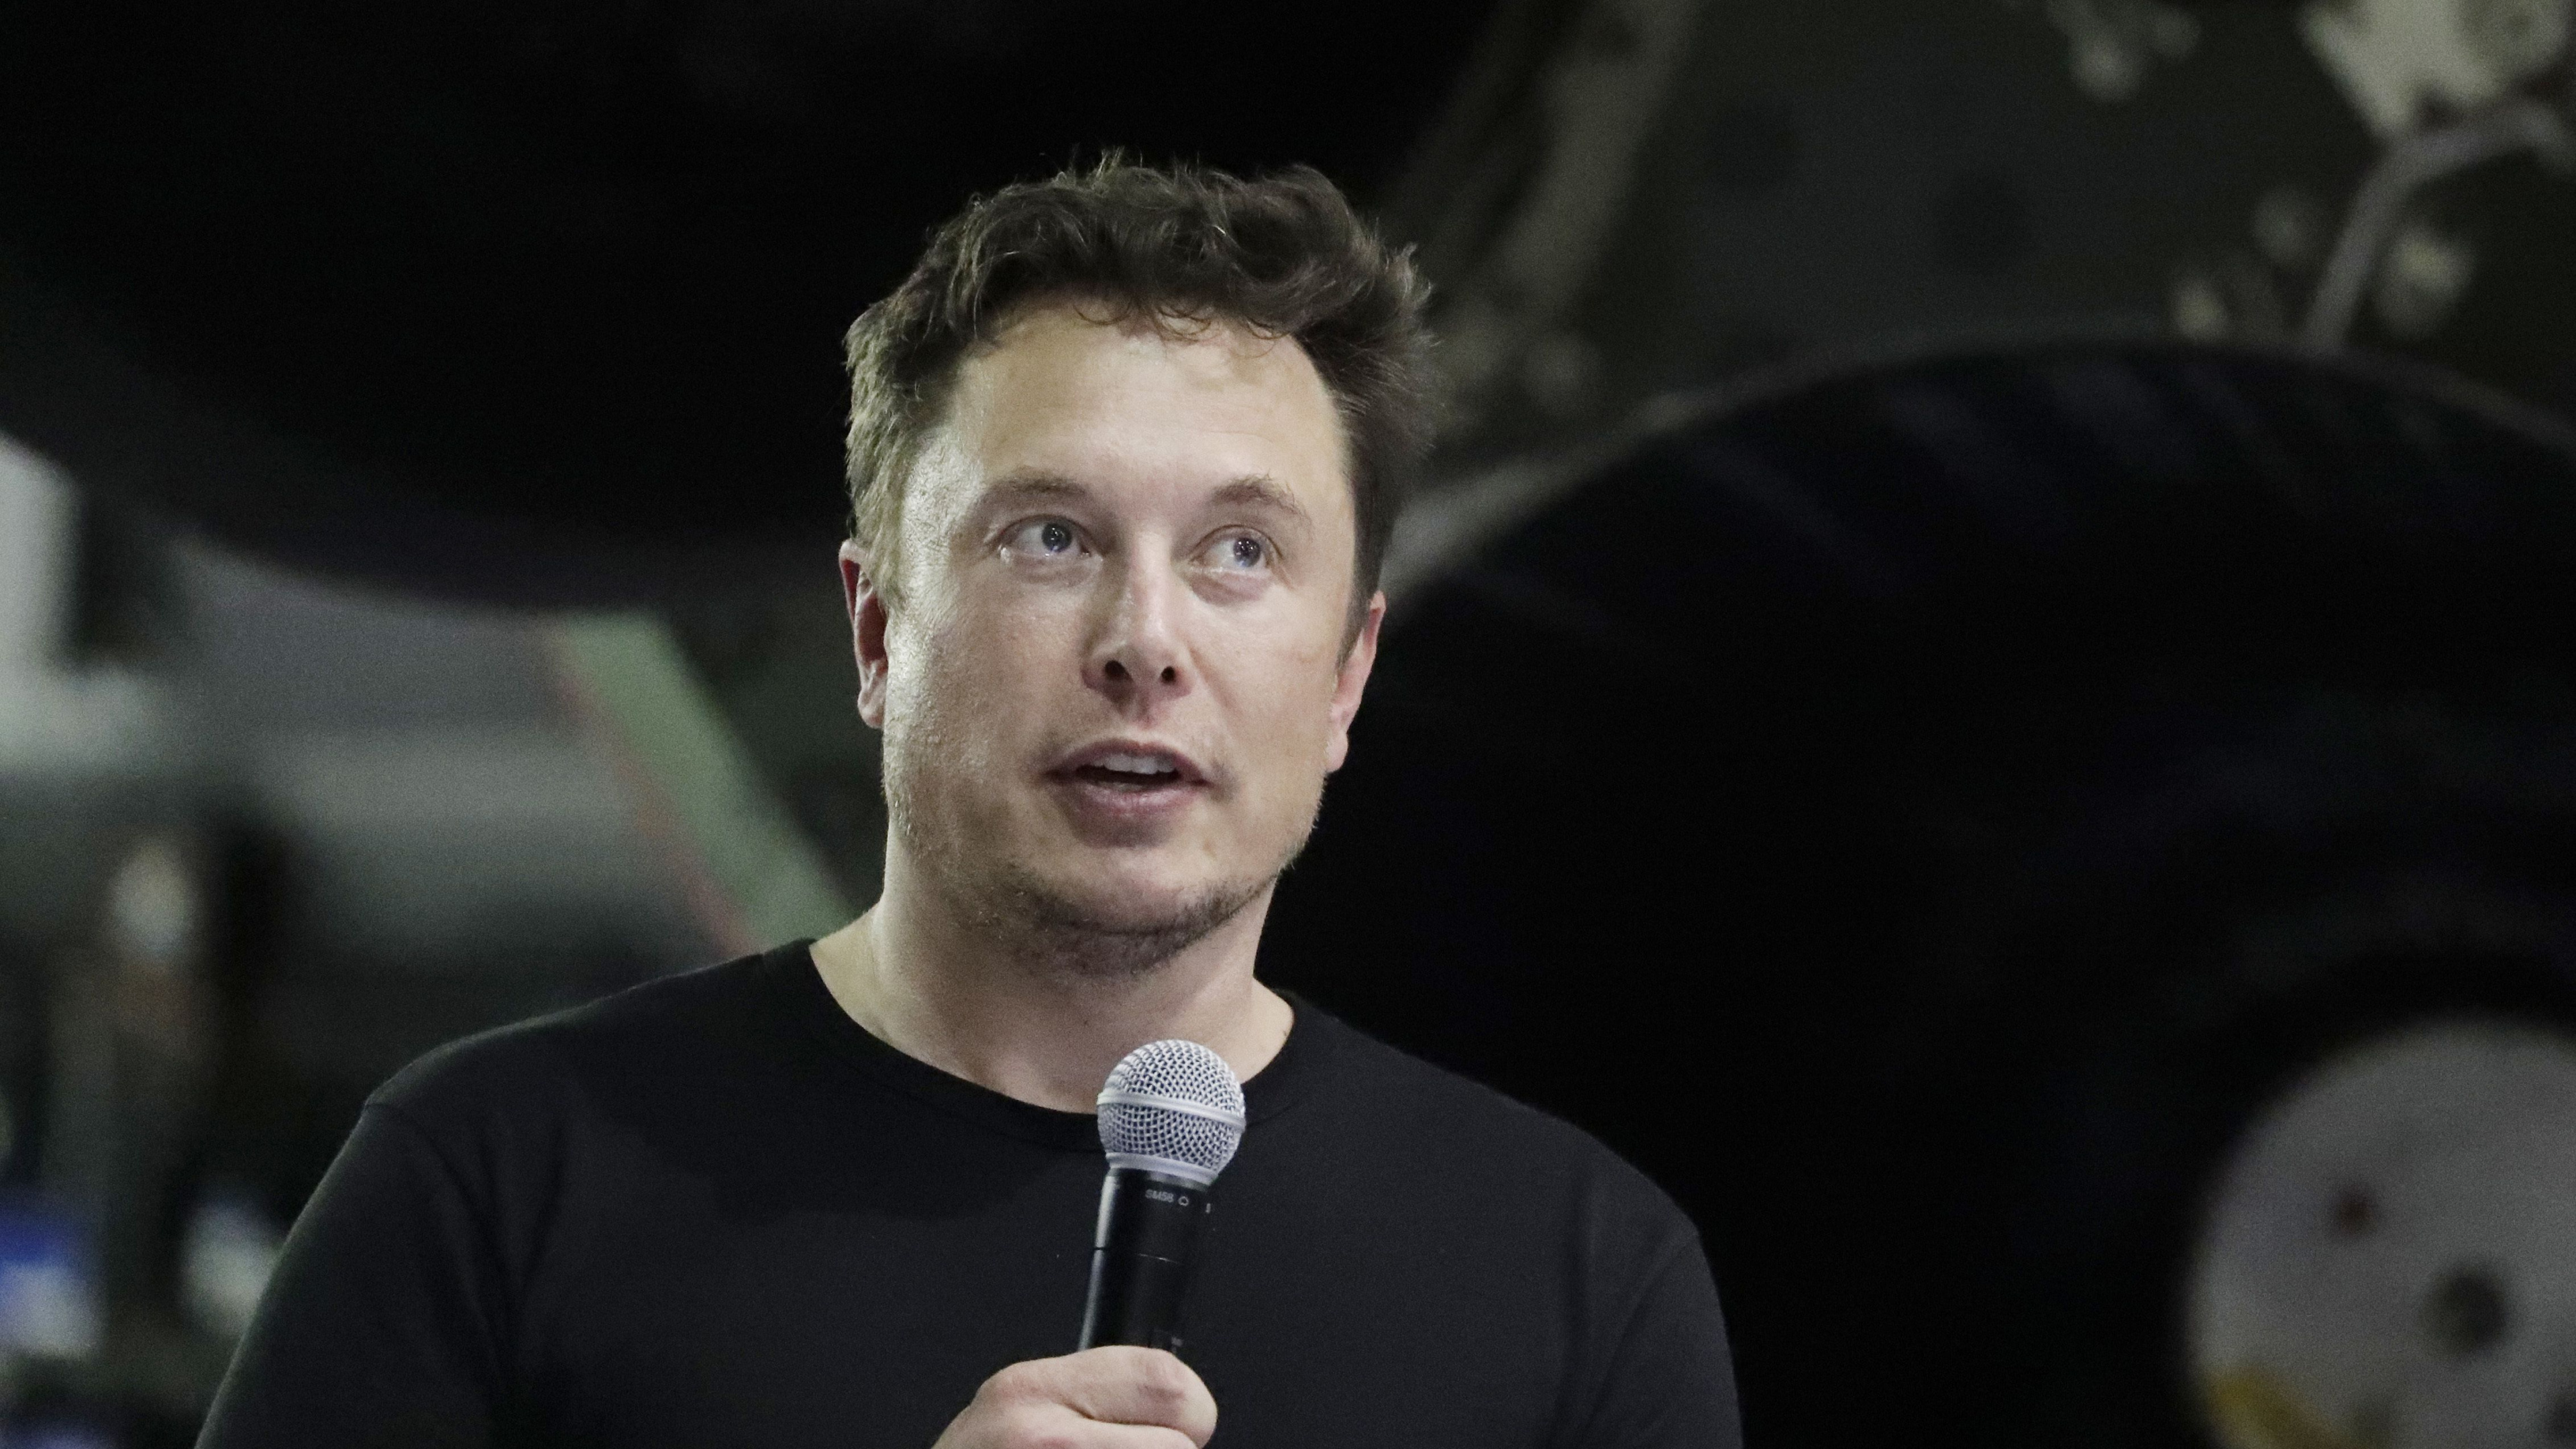 Elon Musk, Bohrtesttunnel, 60 Minuten, Vereinigte Staaten Von Amerika, Person. Wallpaper in 3840x2160 Resolution